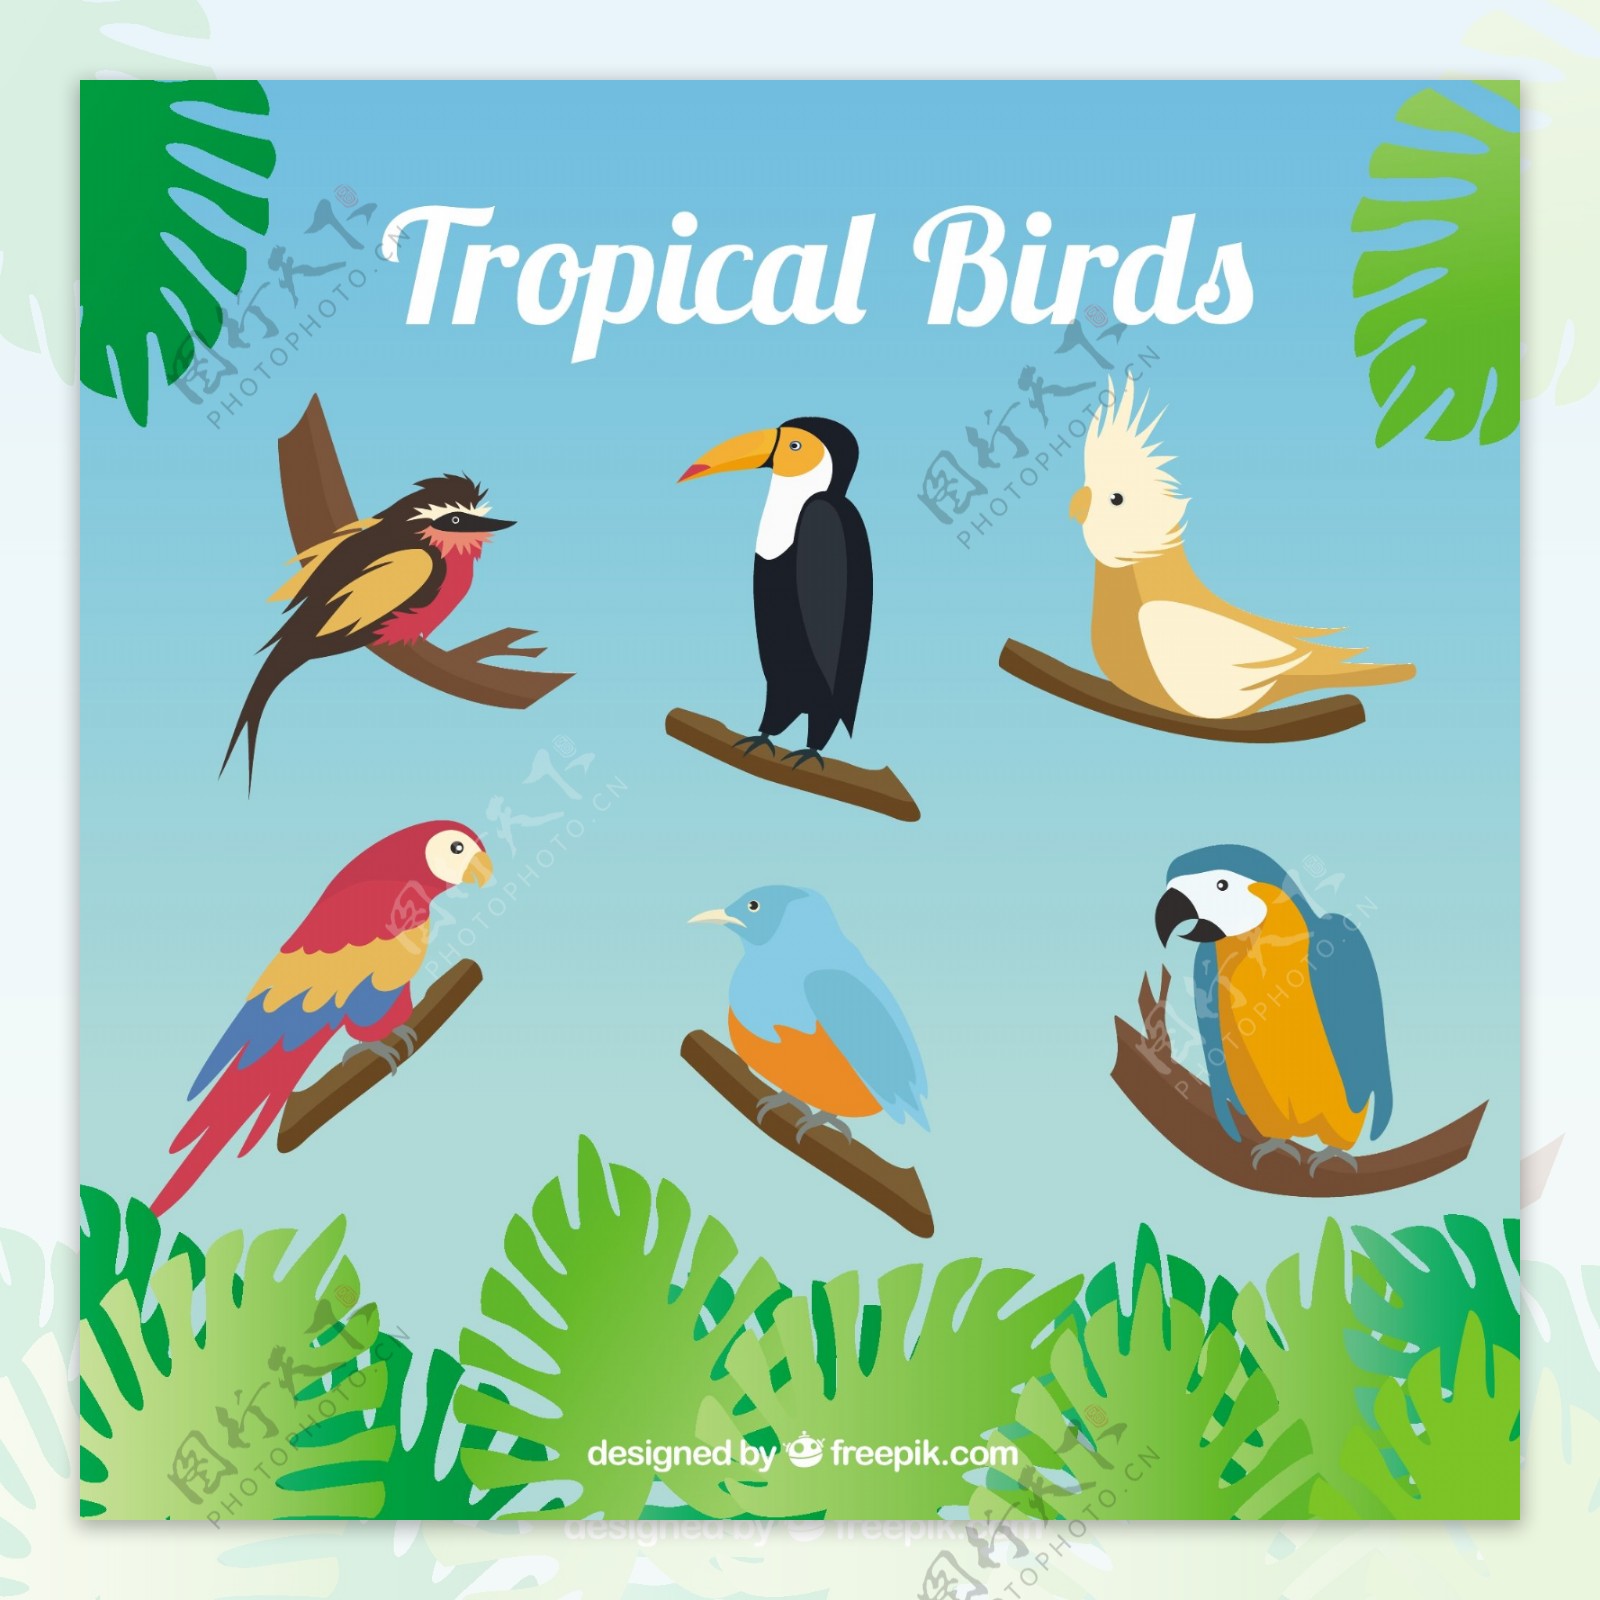 热带鸟类的种类